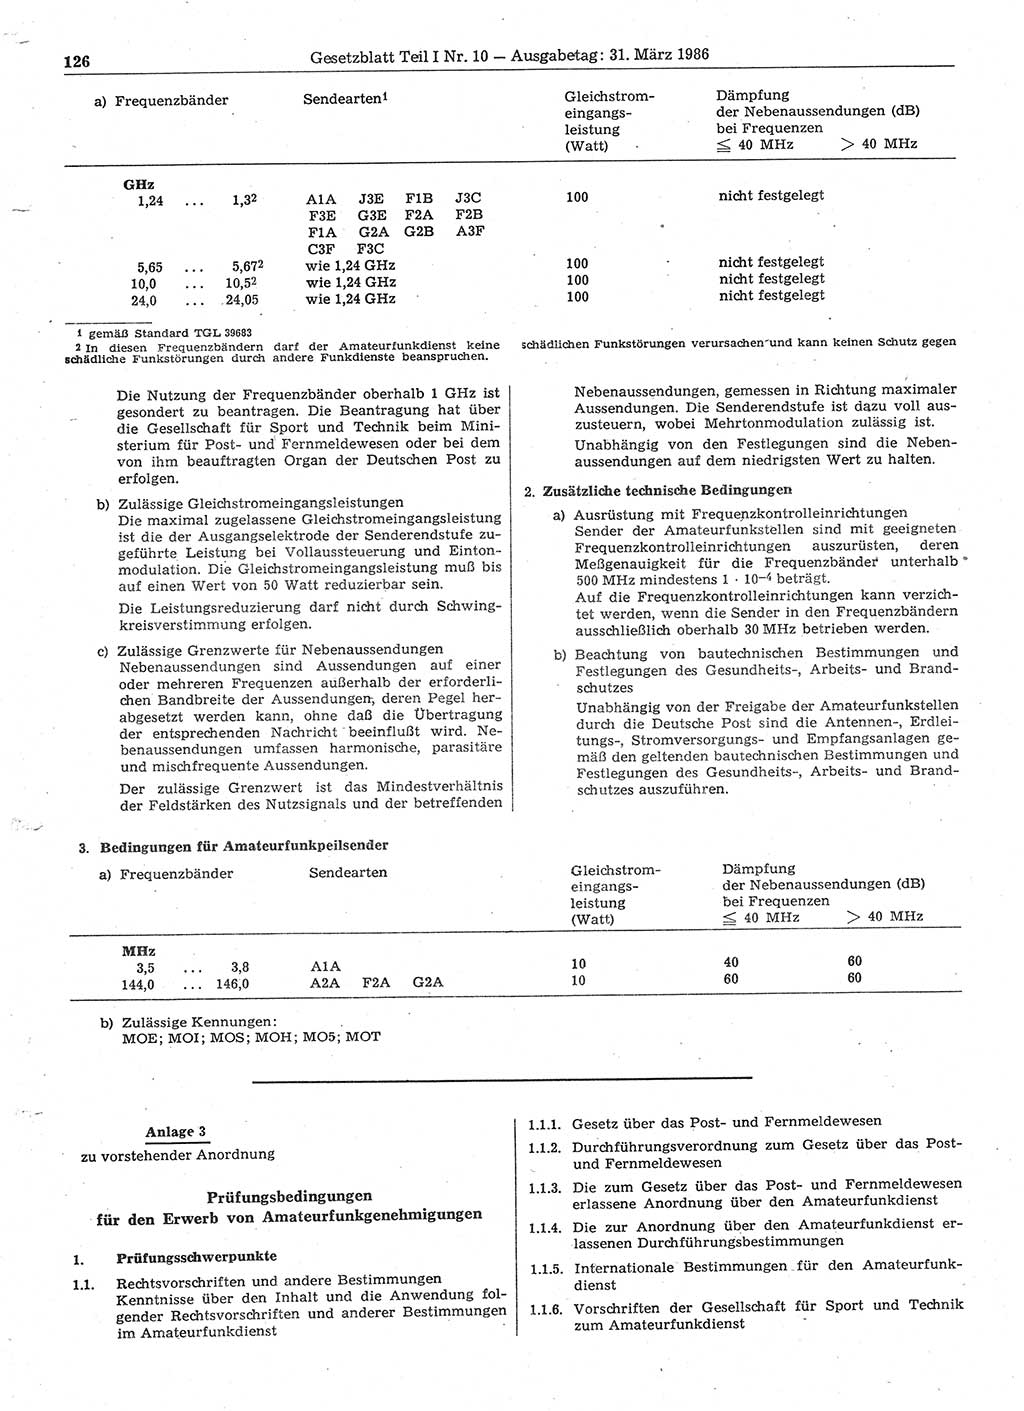 Gesetzblatt (GBl.) der Deutschen Demokratischen Republik (DDR) Teil Ⅰ 1986, Seite 126 (GBl. DDR Ⅰ 1986, S. 126)